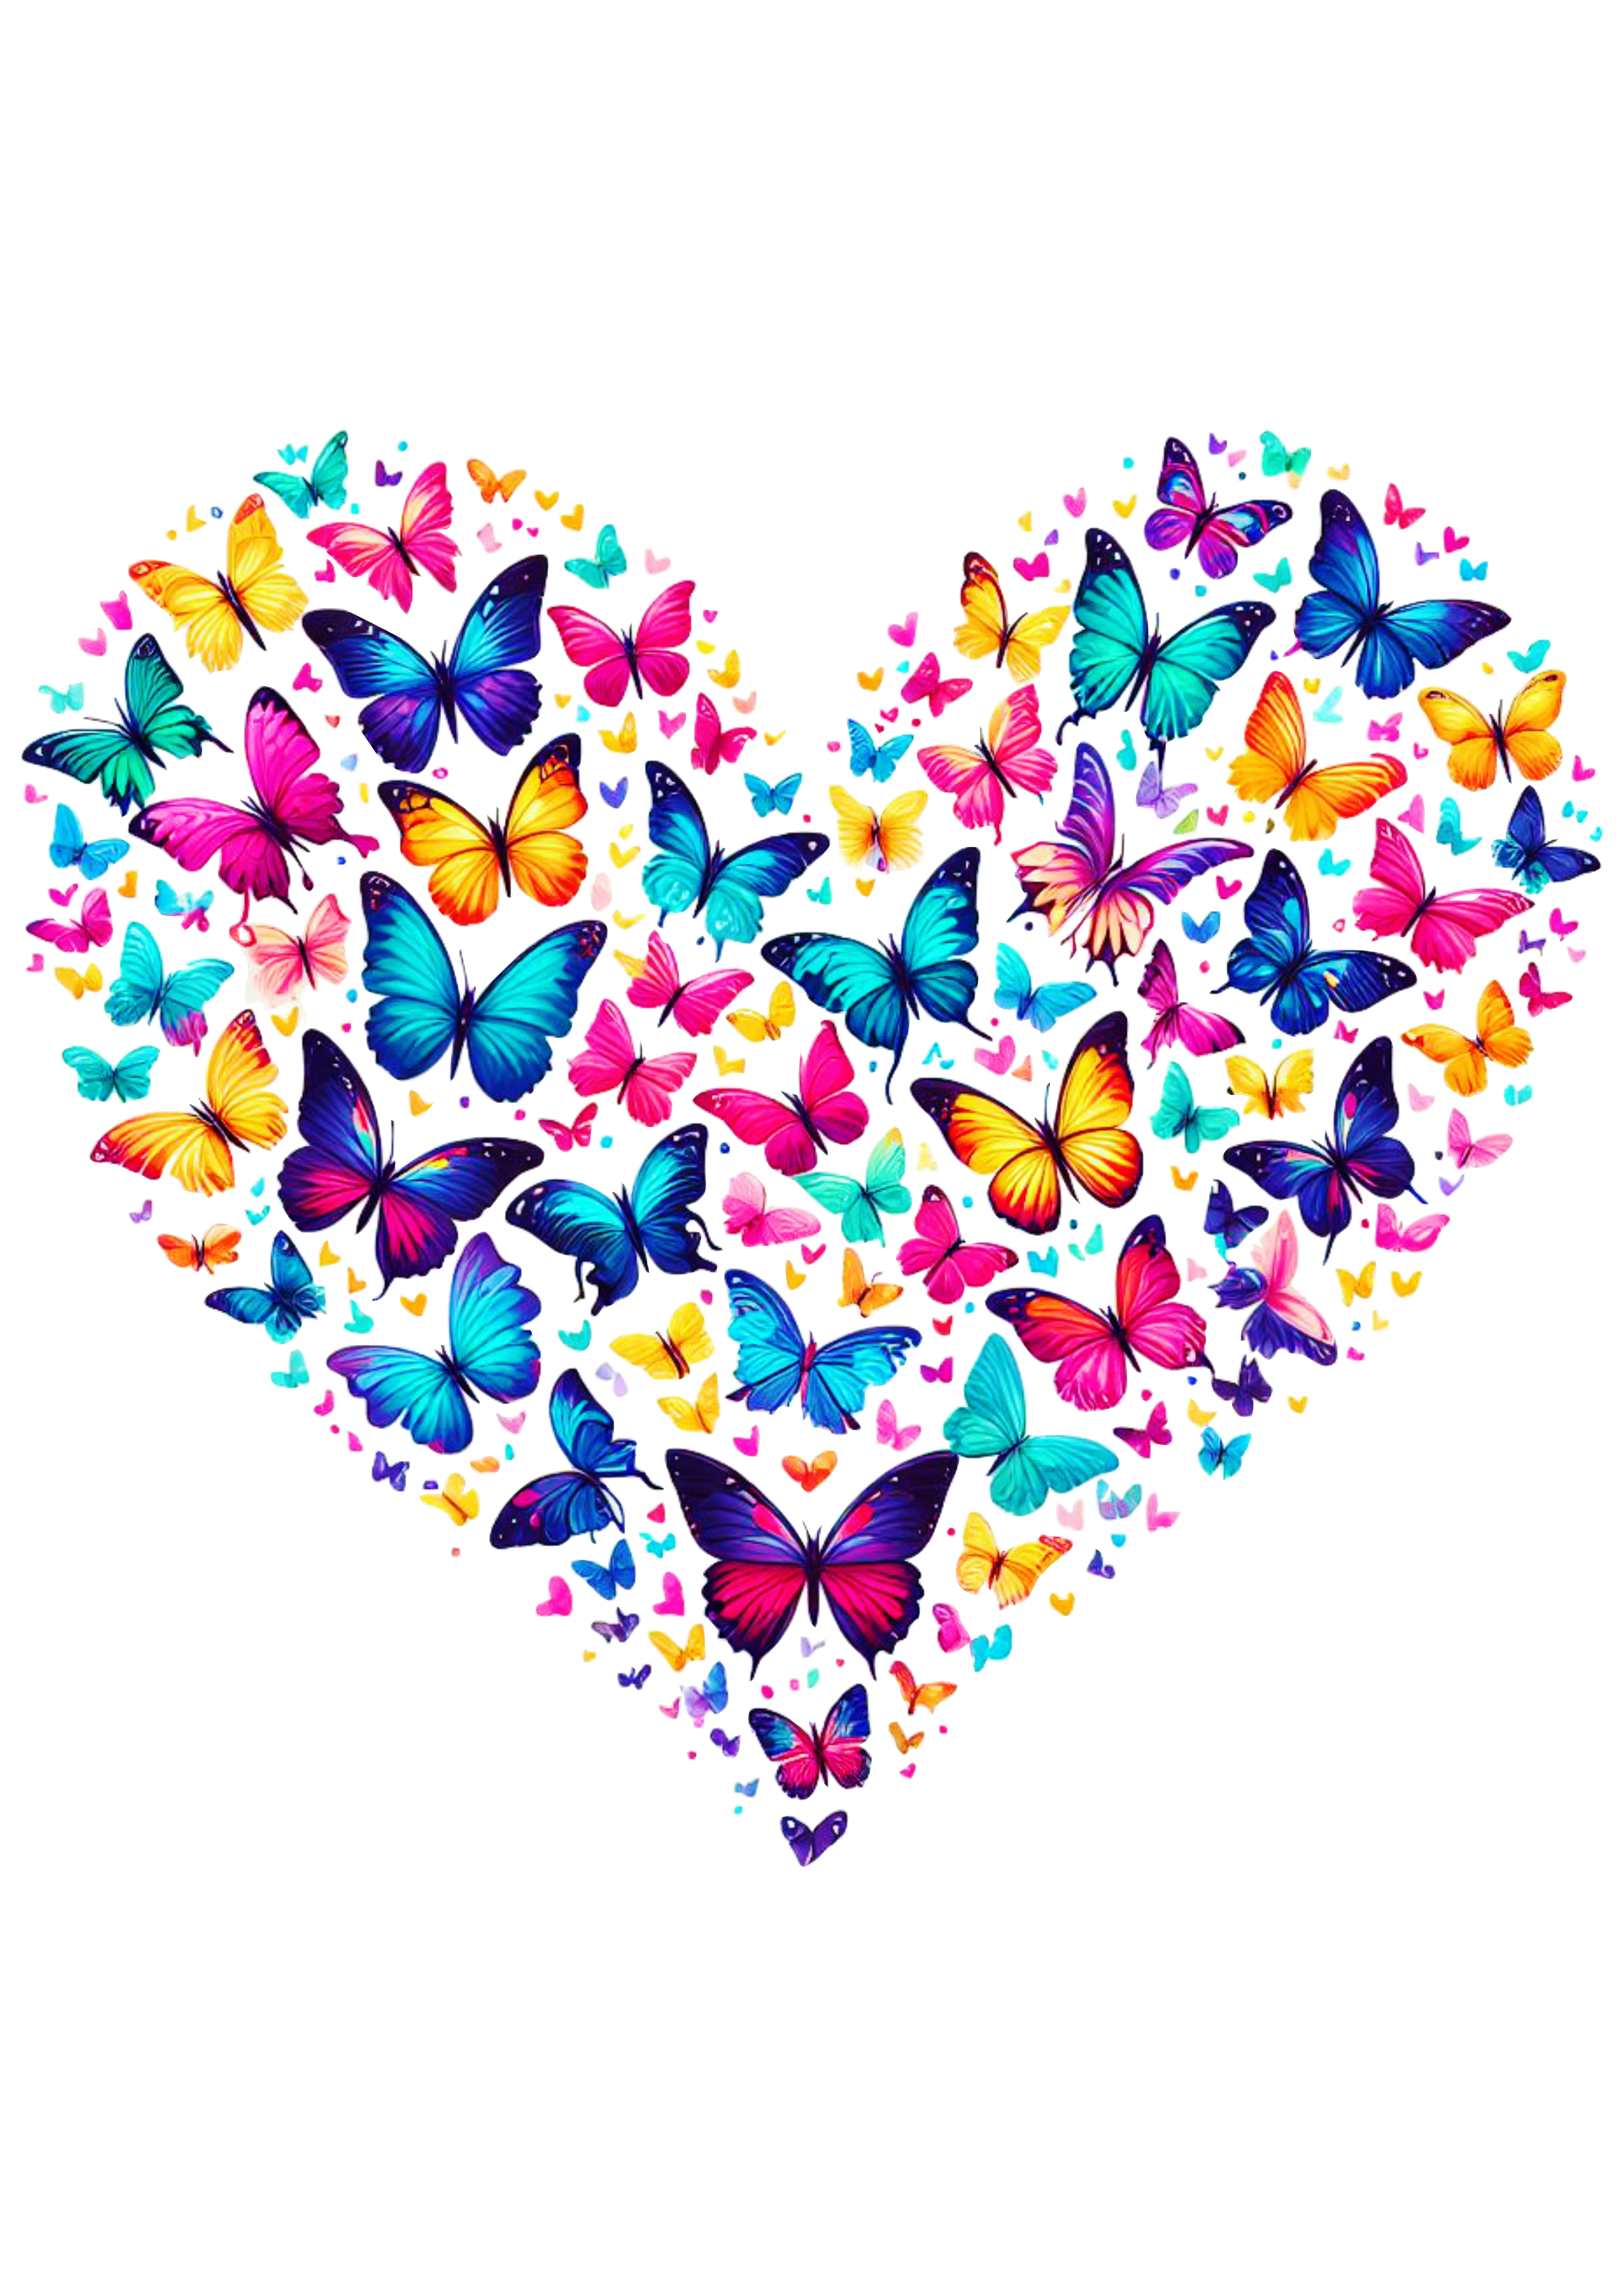 Borboletas coloridas em formato de coração decoração desenho fofinho artes gráficas png